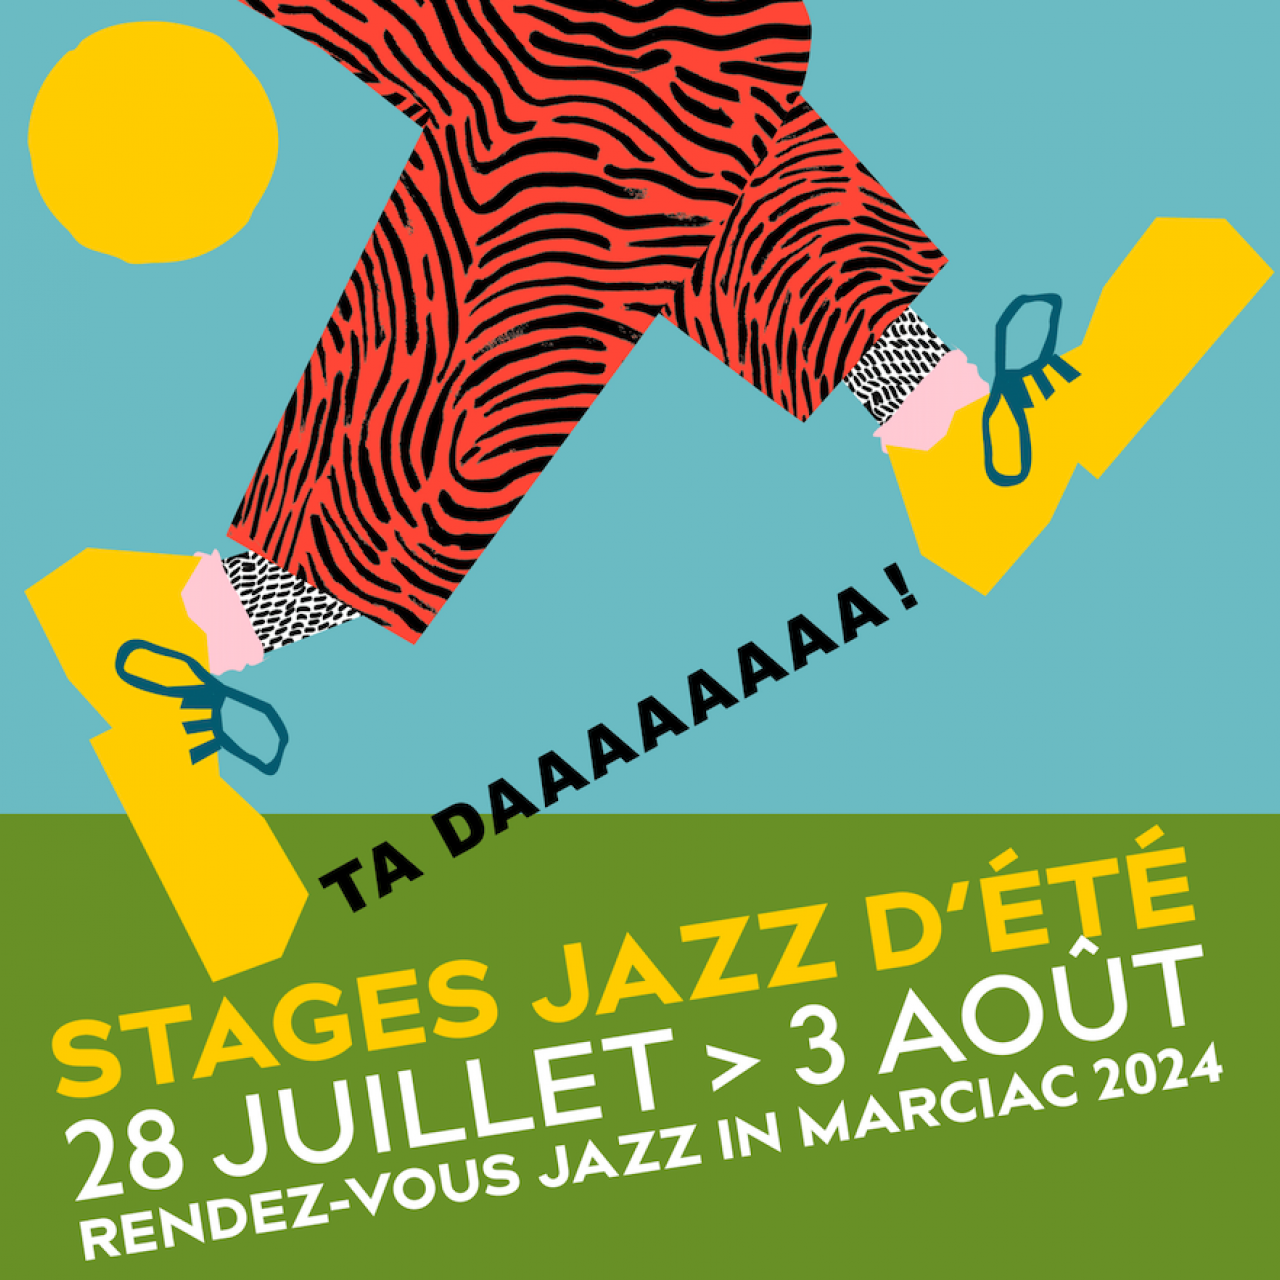 Le stage jazz 2024 AstradaMarciac